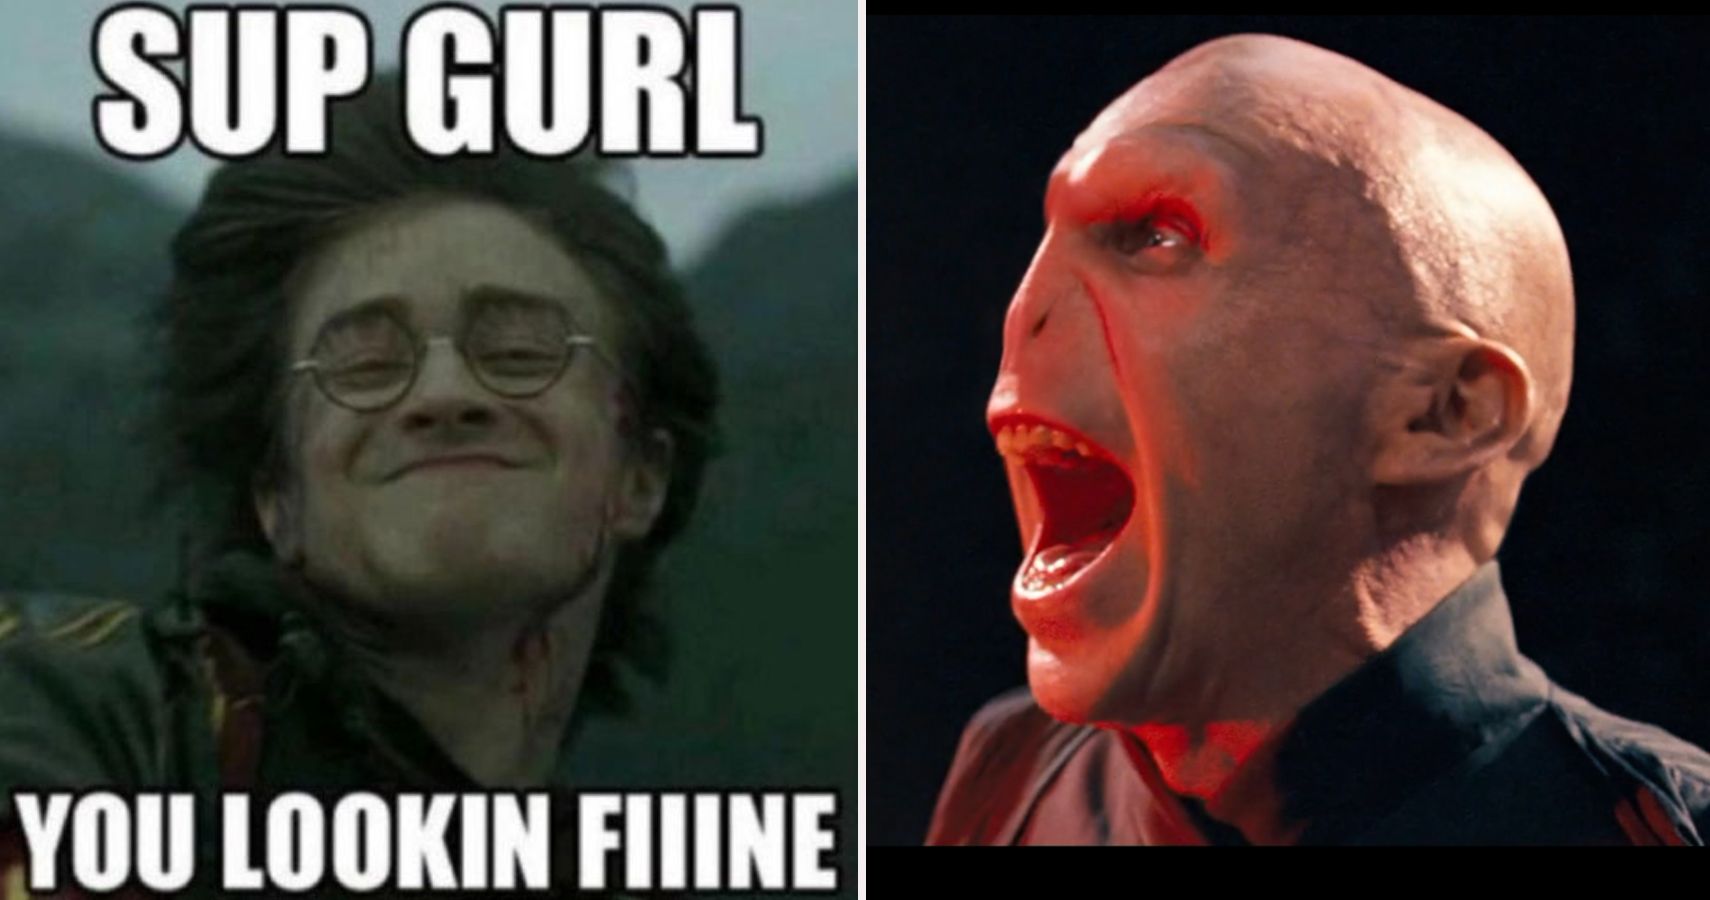 Harry Potter Memes - Harry Potter meme club - Quora